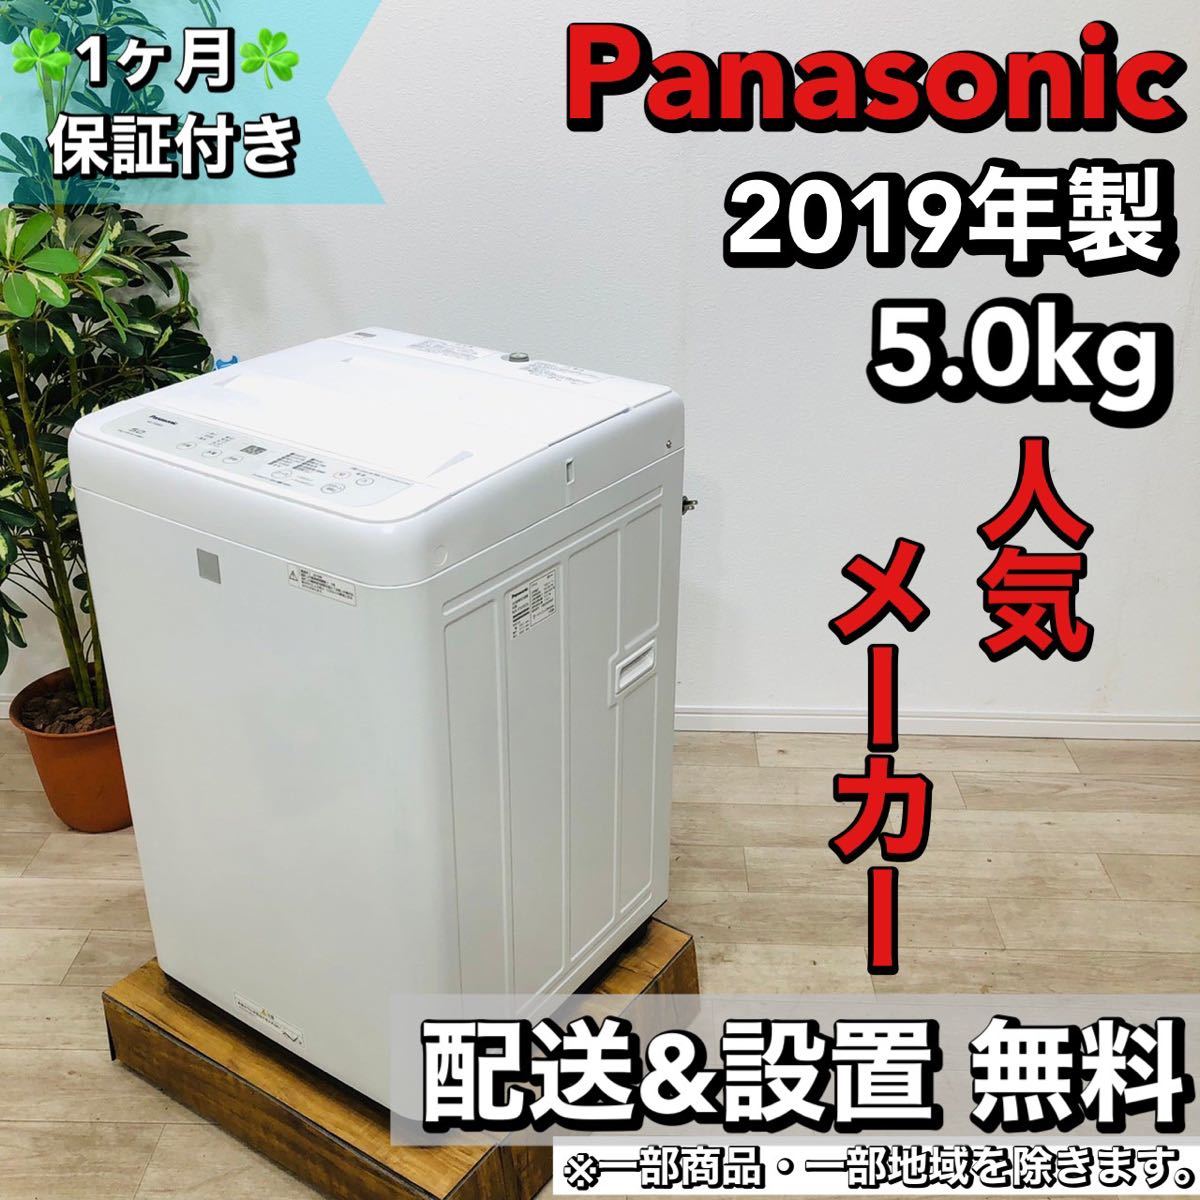 注目ブランド Panasonic a1515 4.5 2019年製 5.0kg 洗濯機 5kg以上